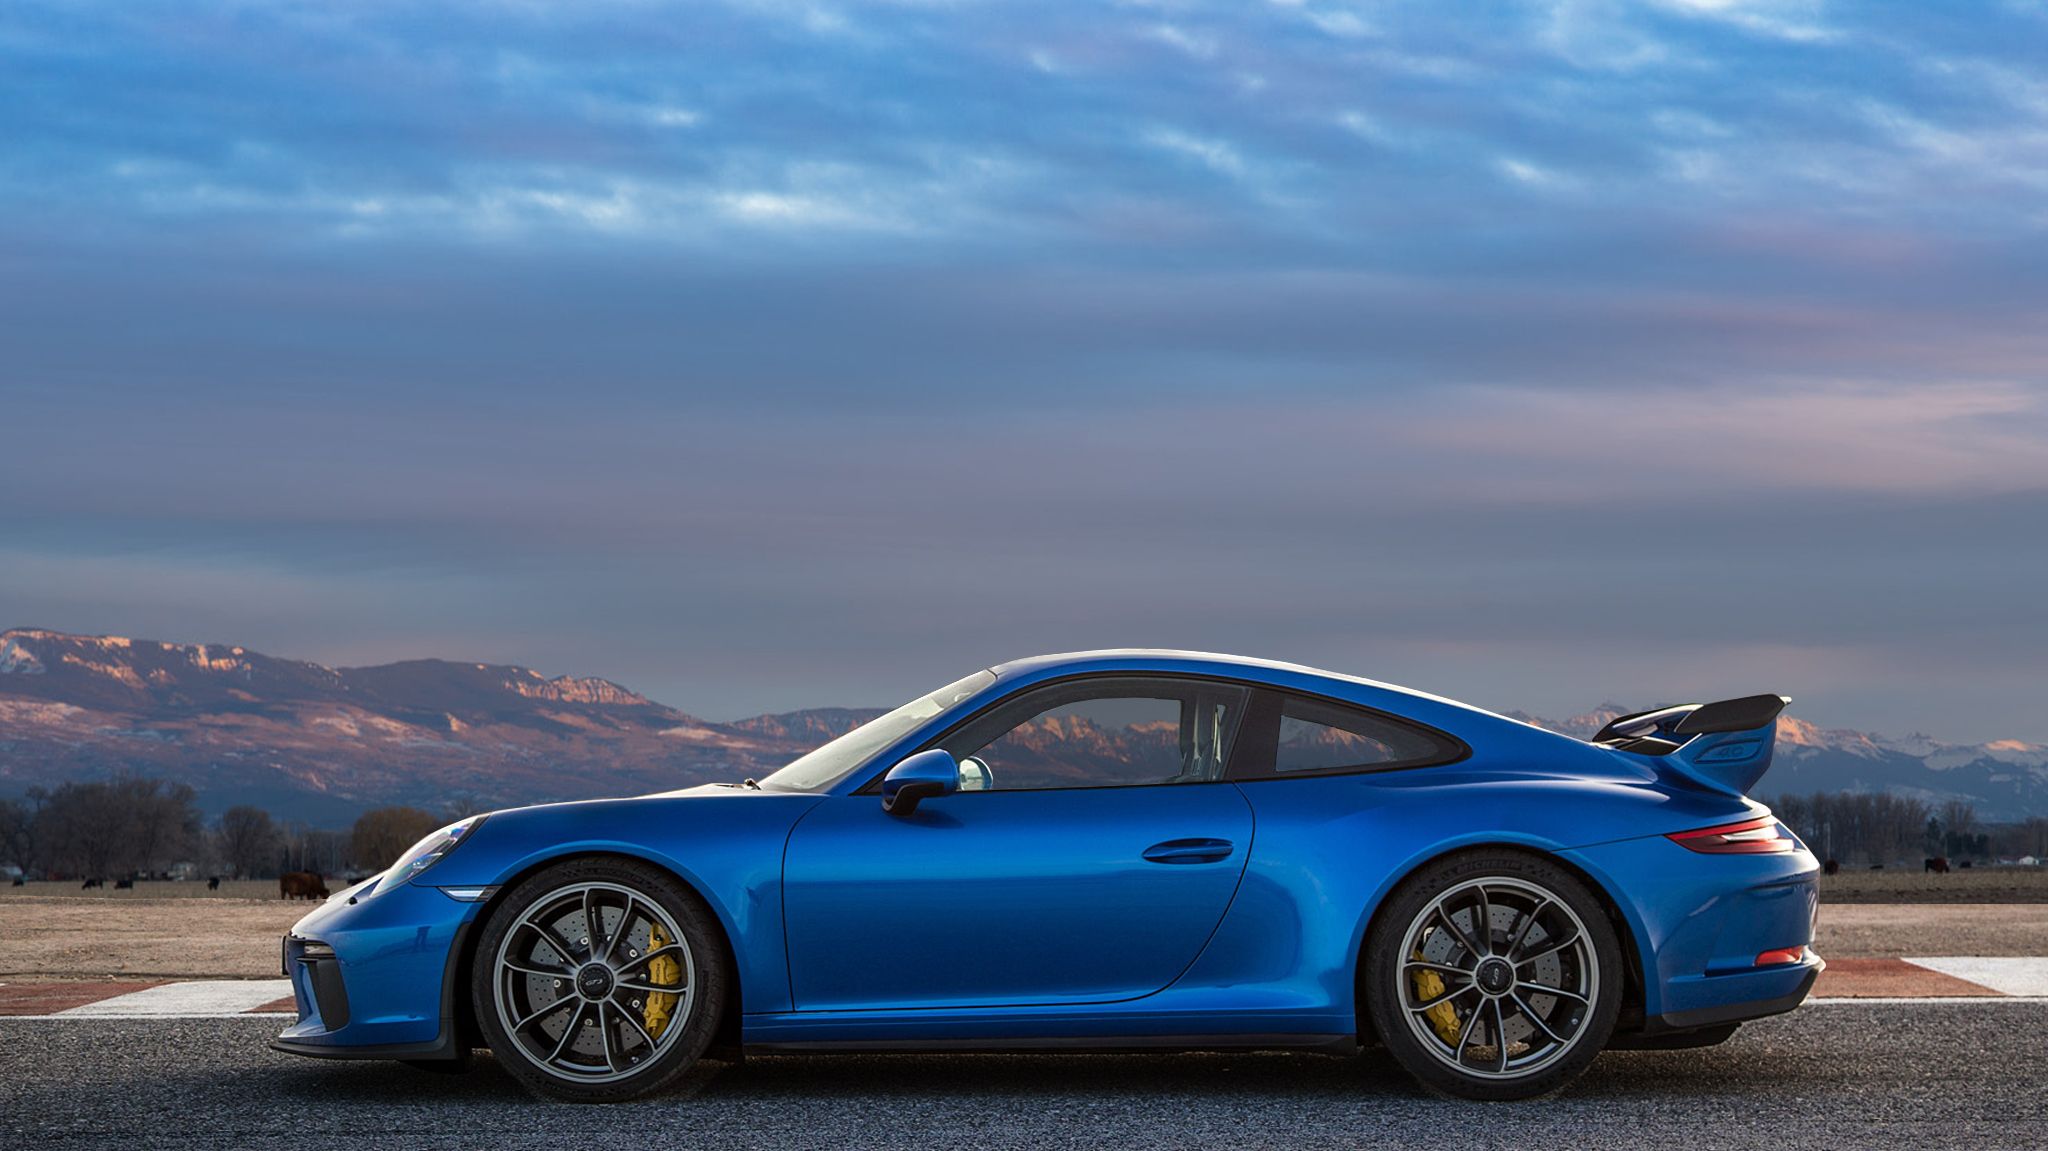 Porsche 911 Gt3 Rs (blue) Definition Wallpaper